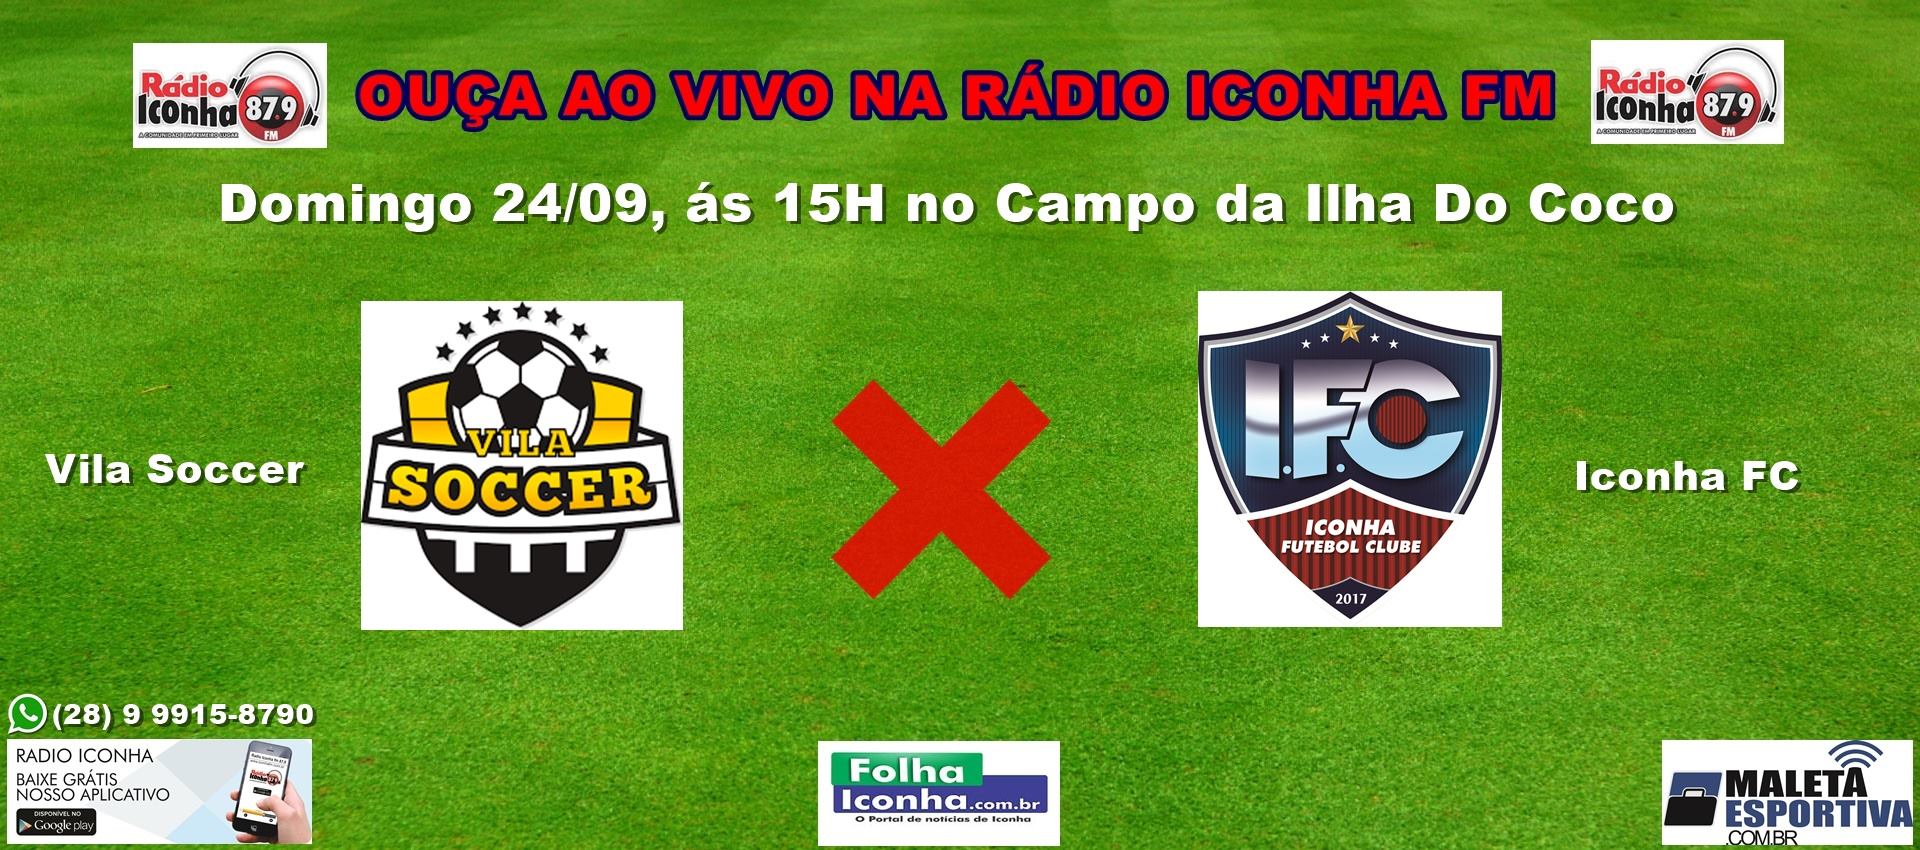 Em lados extremos da tabela, Vila Soccer e Iconha FC jogam em Iconha